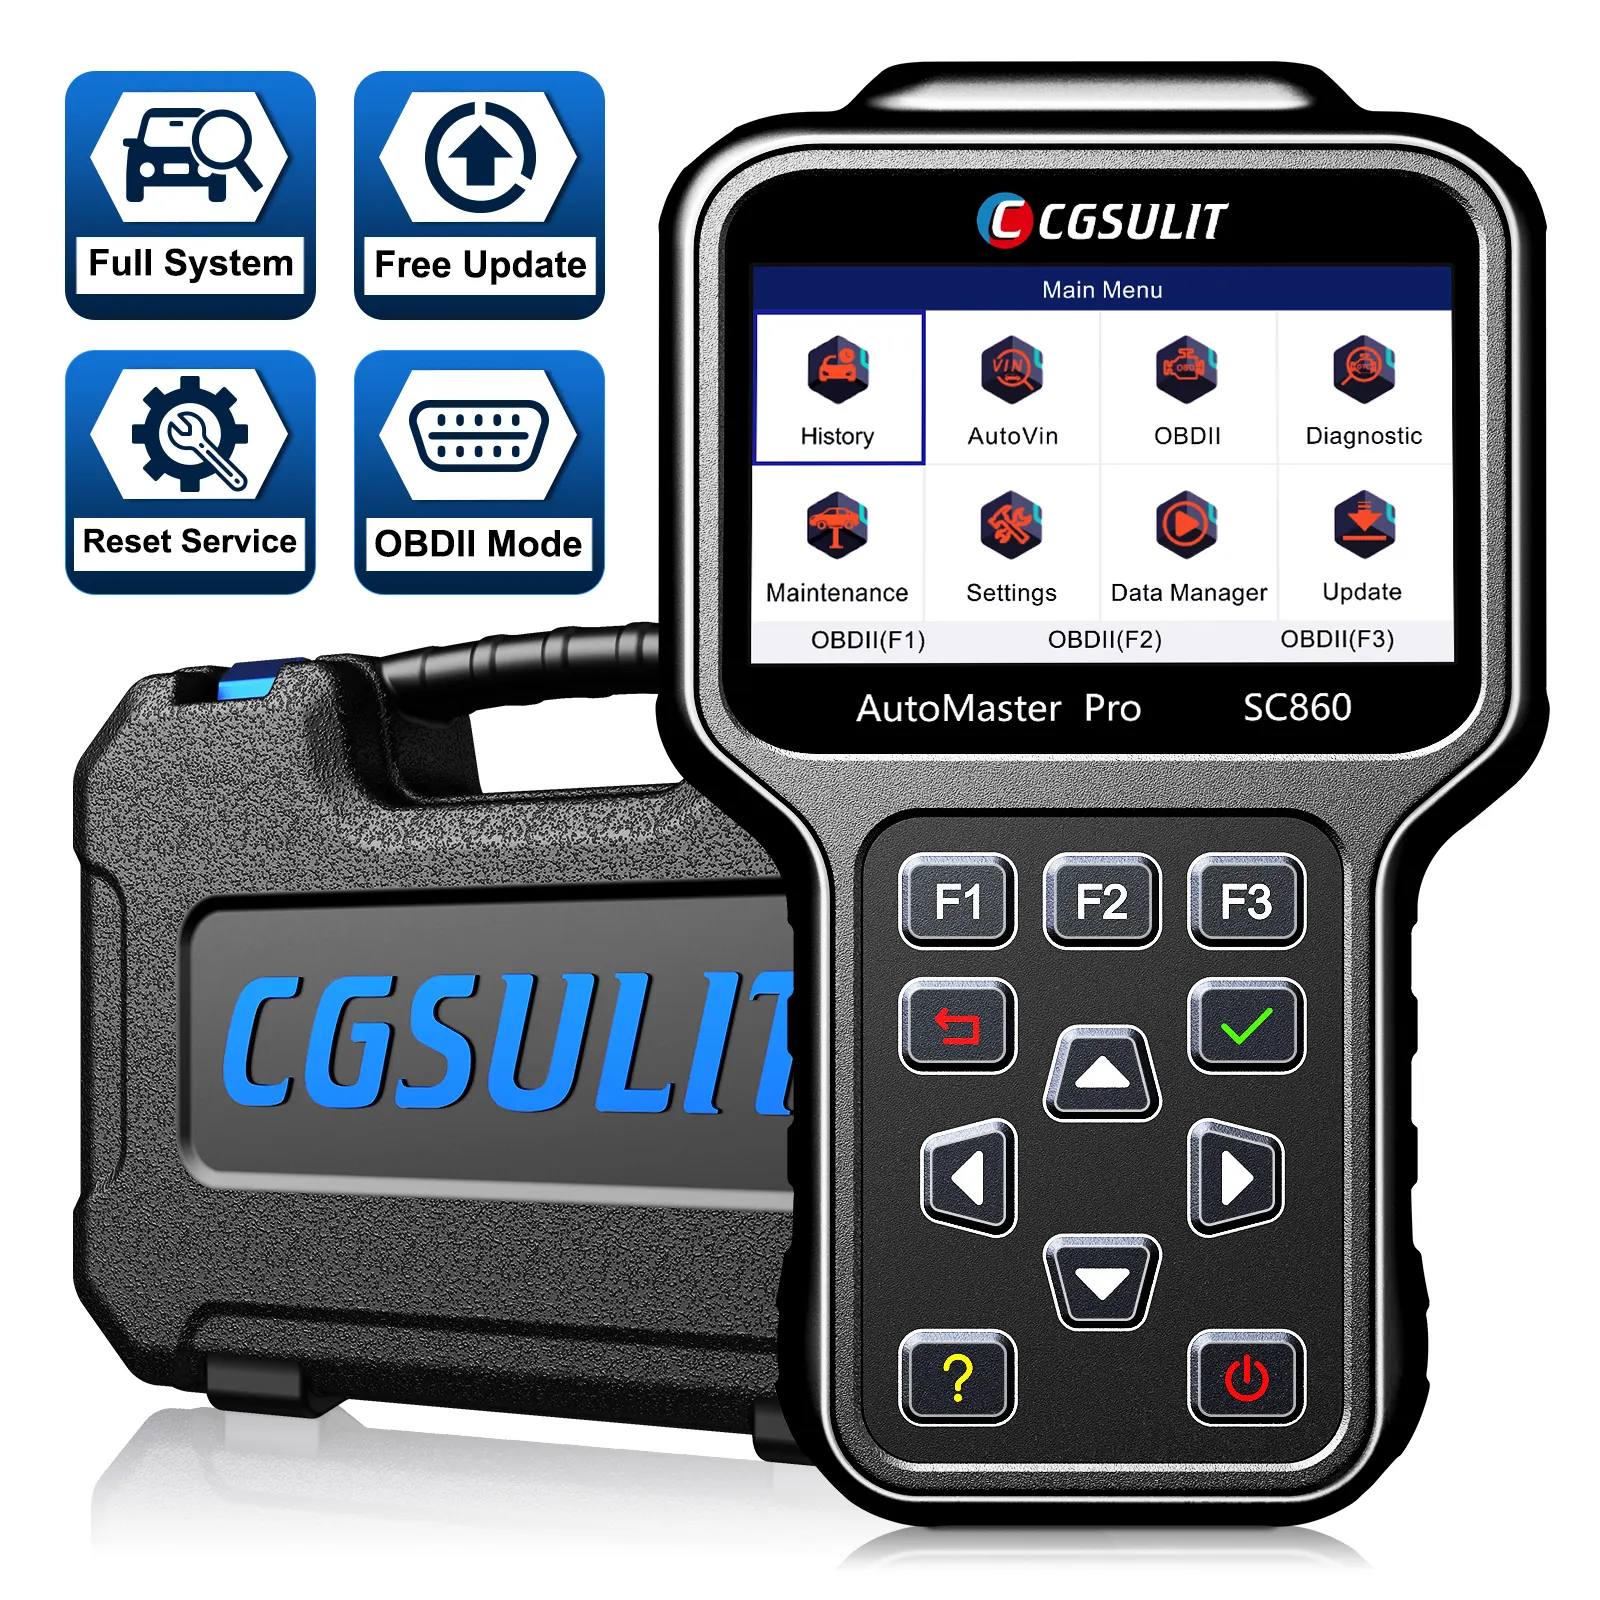 CGSULIT SC880 Alat Pemindai Diagnosis Otomotif, Alat Pemindai OBD II Sistem Lengkap untuk Semua Mobil